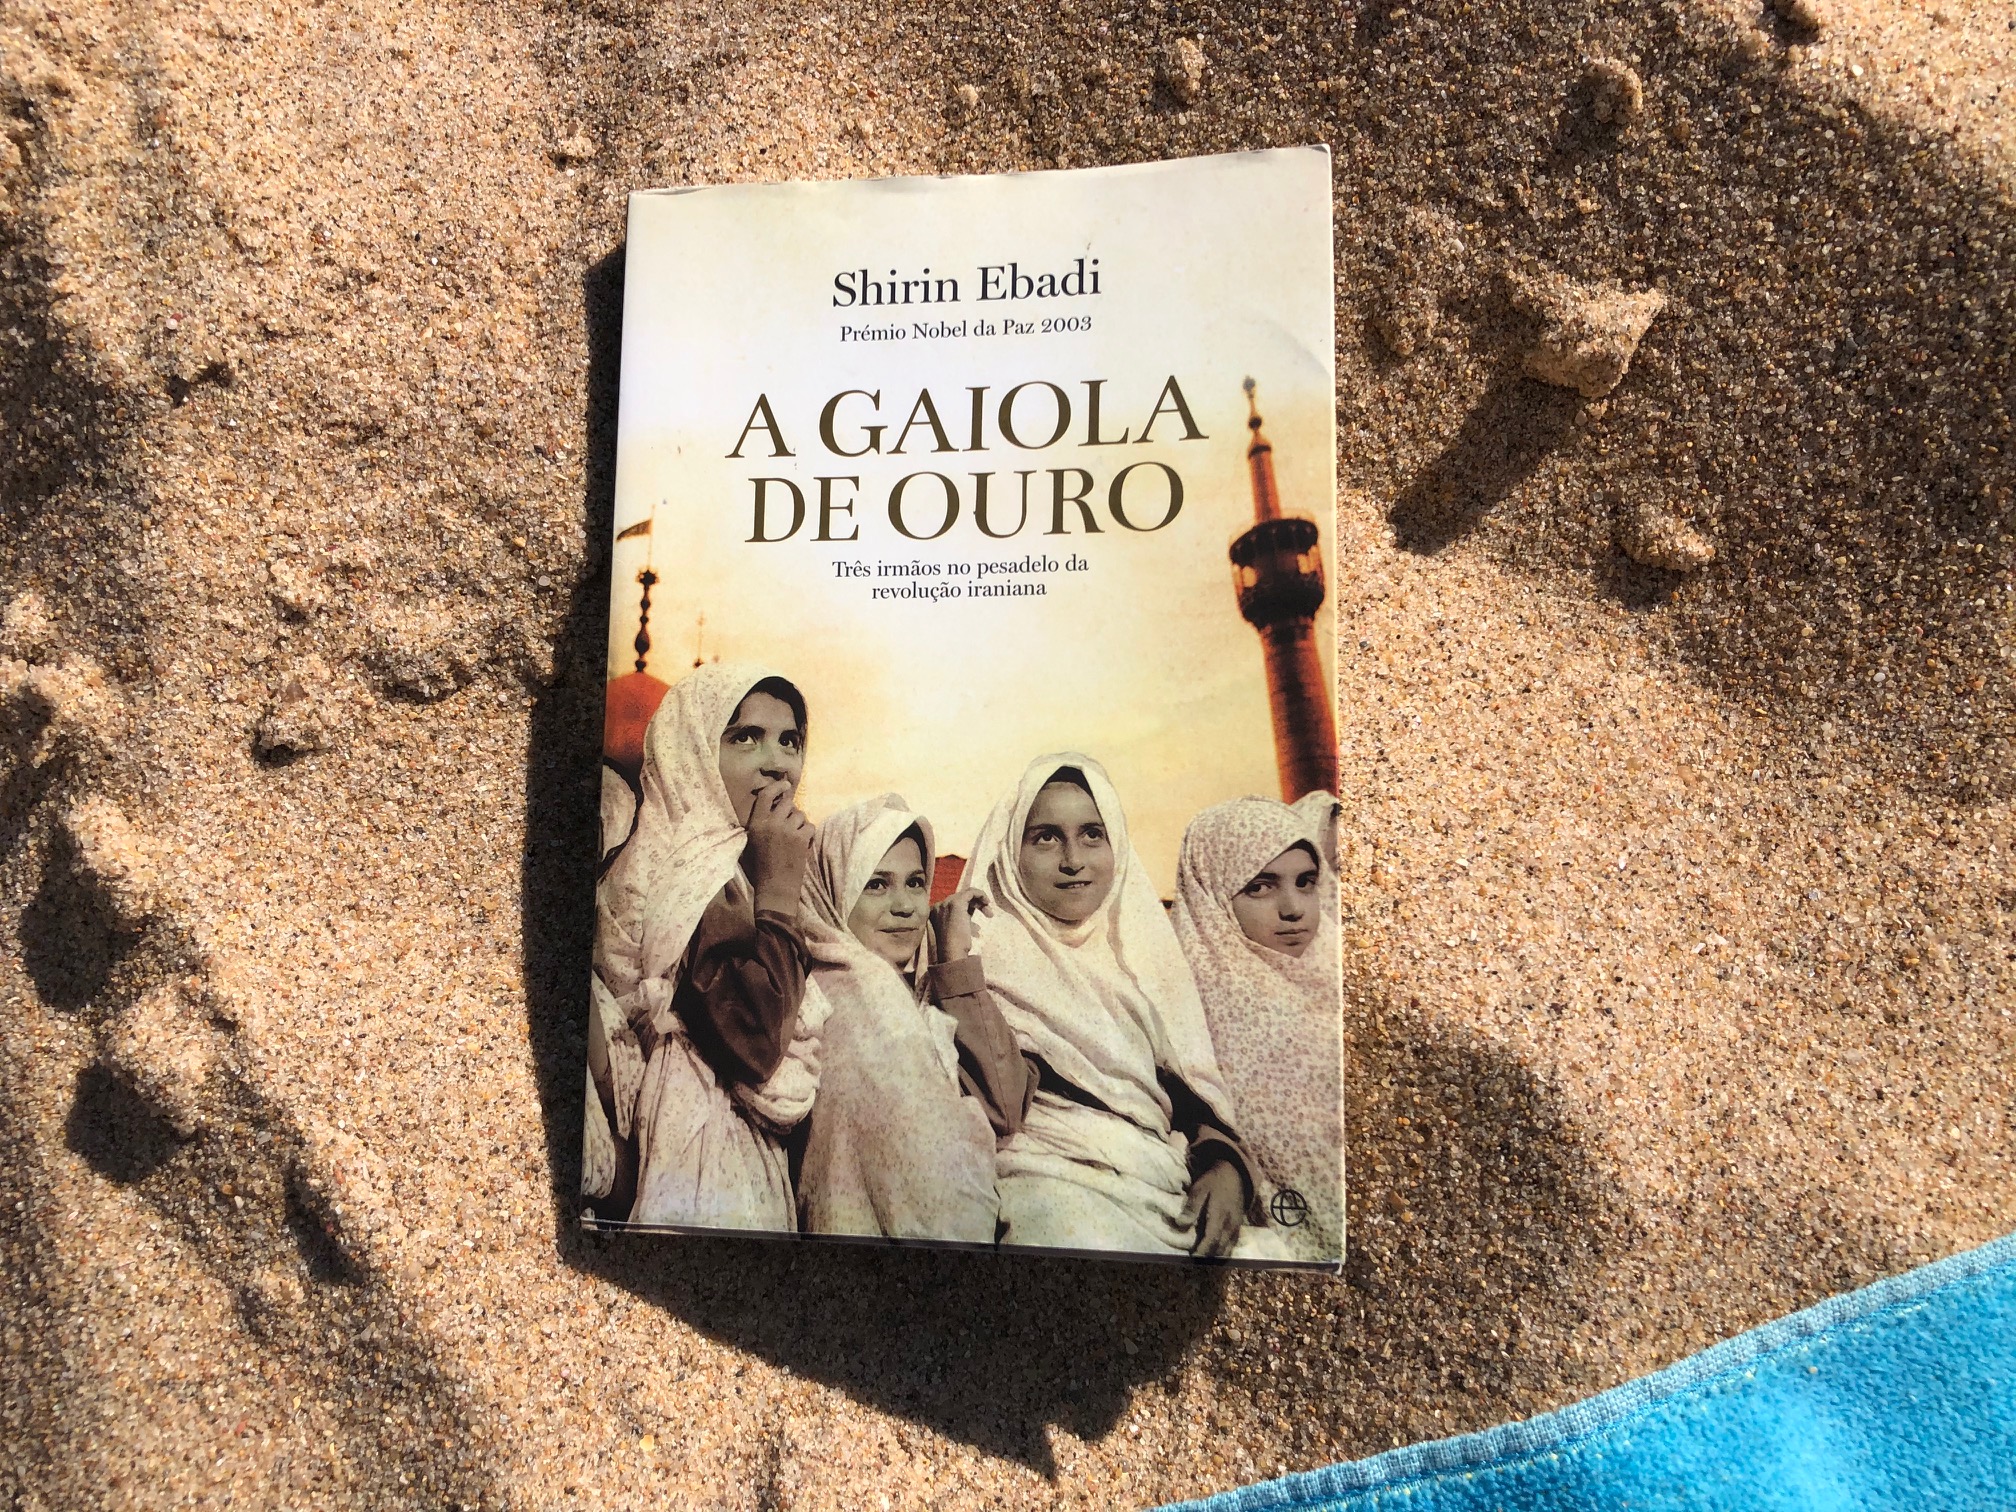 Foto do livro «A gaiola de ouro» na areia da praia